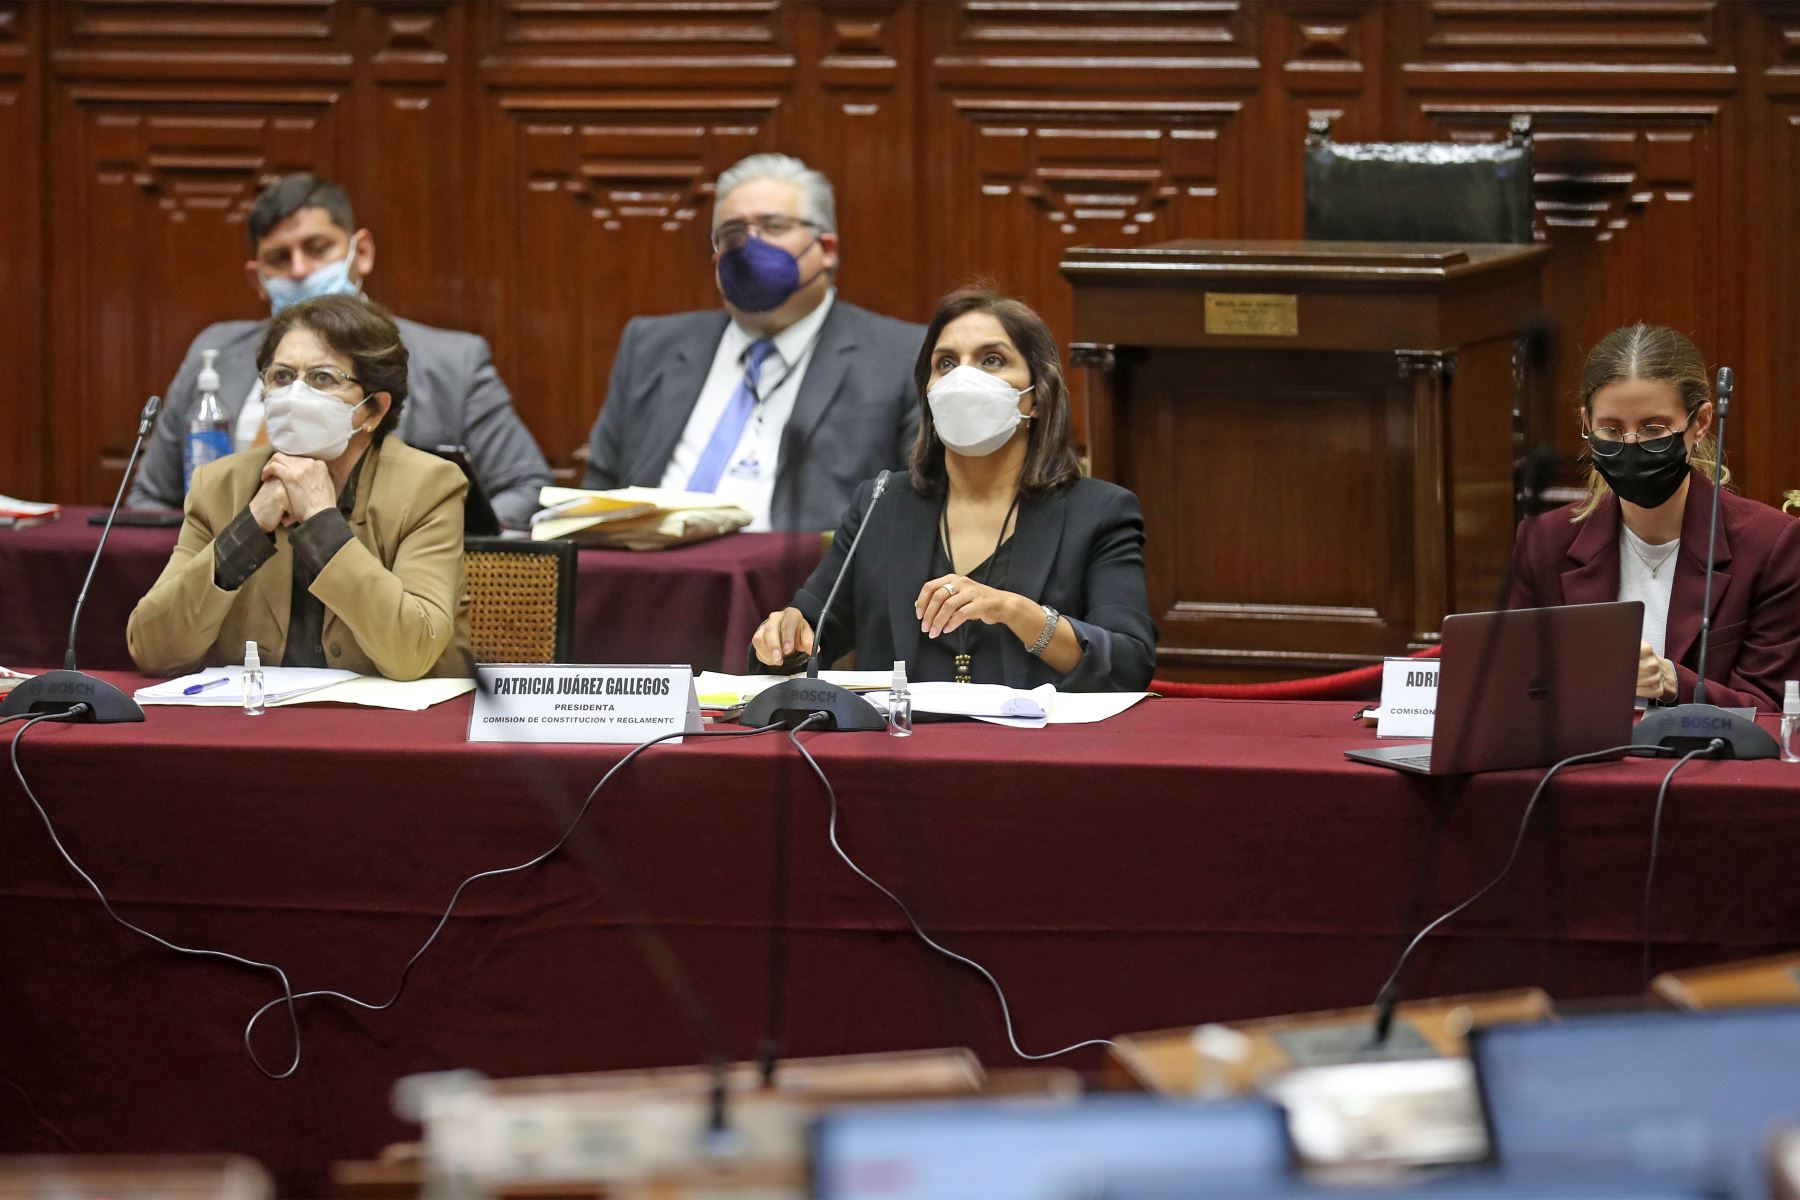 Sesión extraordinaria de la Comisión de Constitución, encabezado por la congresista Patricia Juárez.
Foto: Congreso